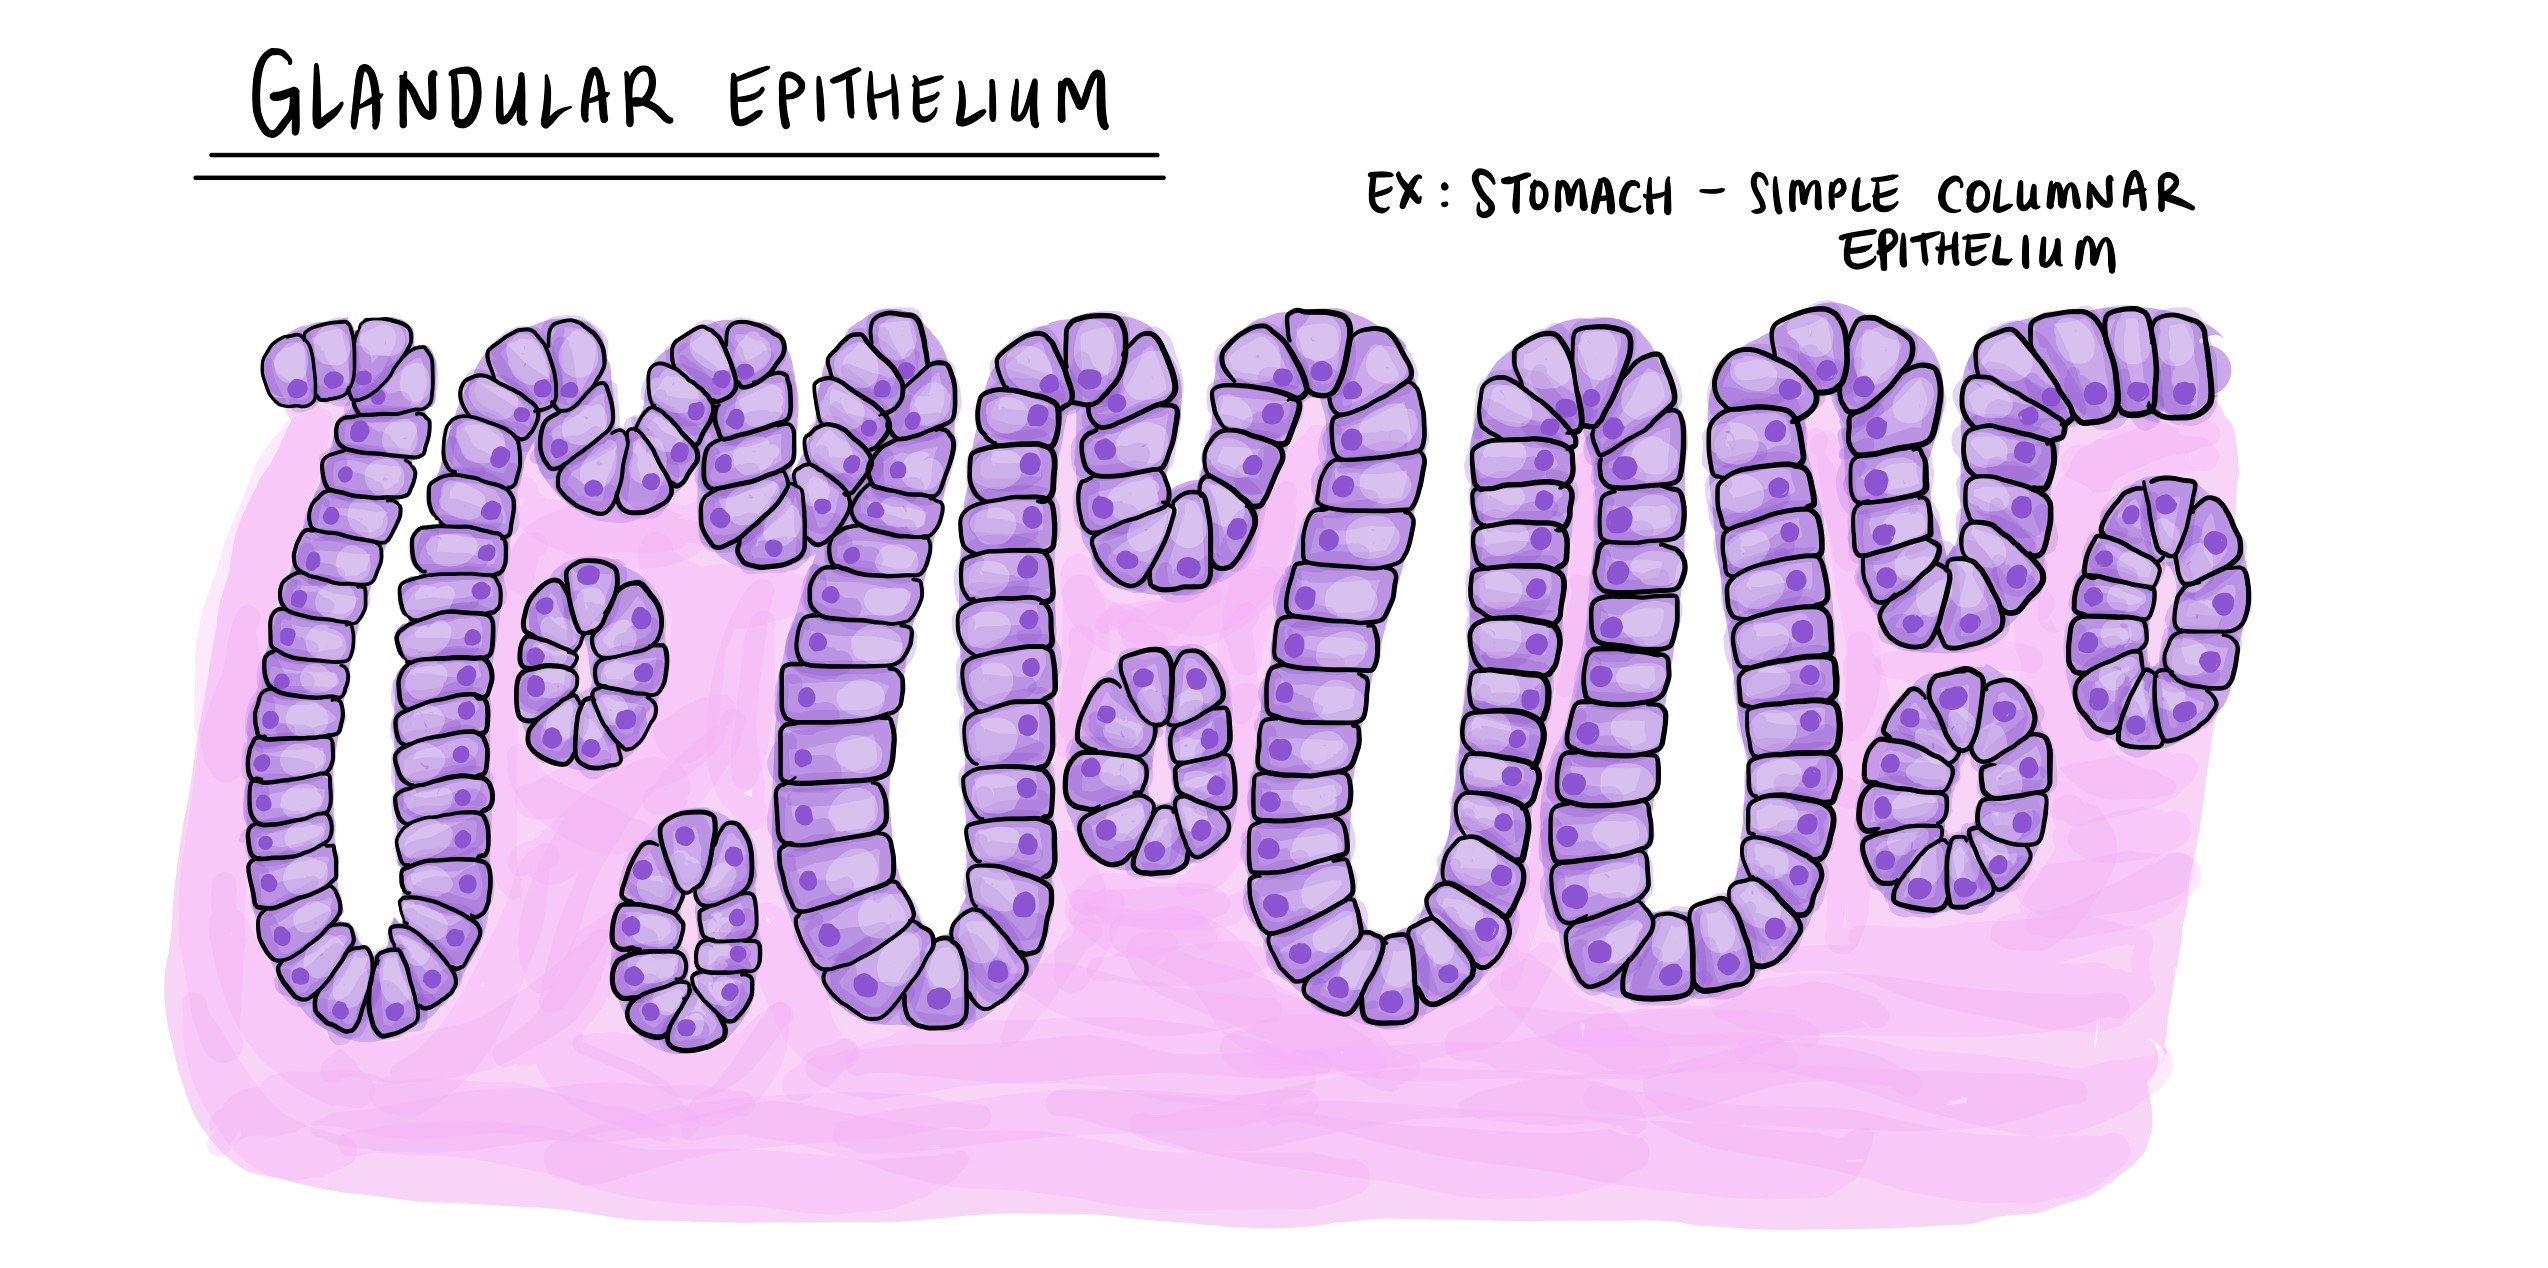 I-epithelium ye-glandular